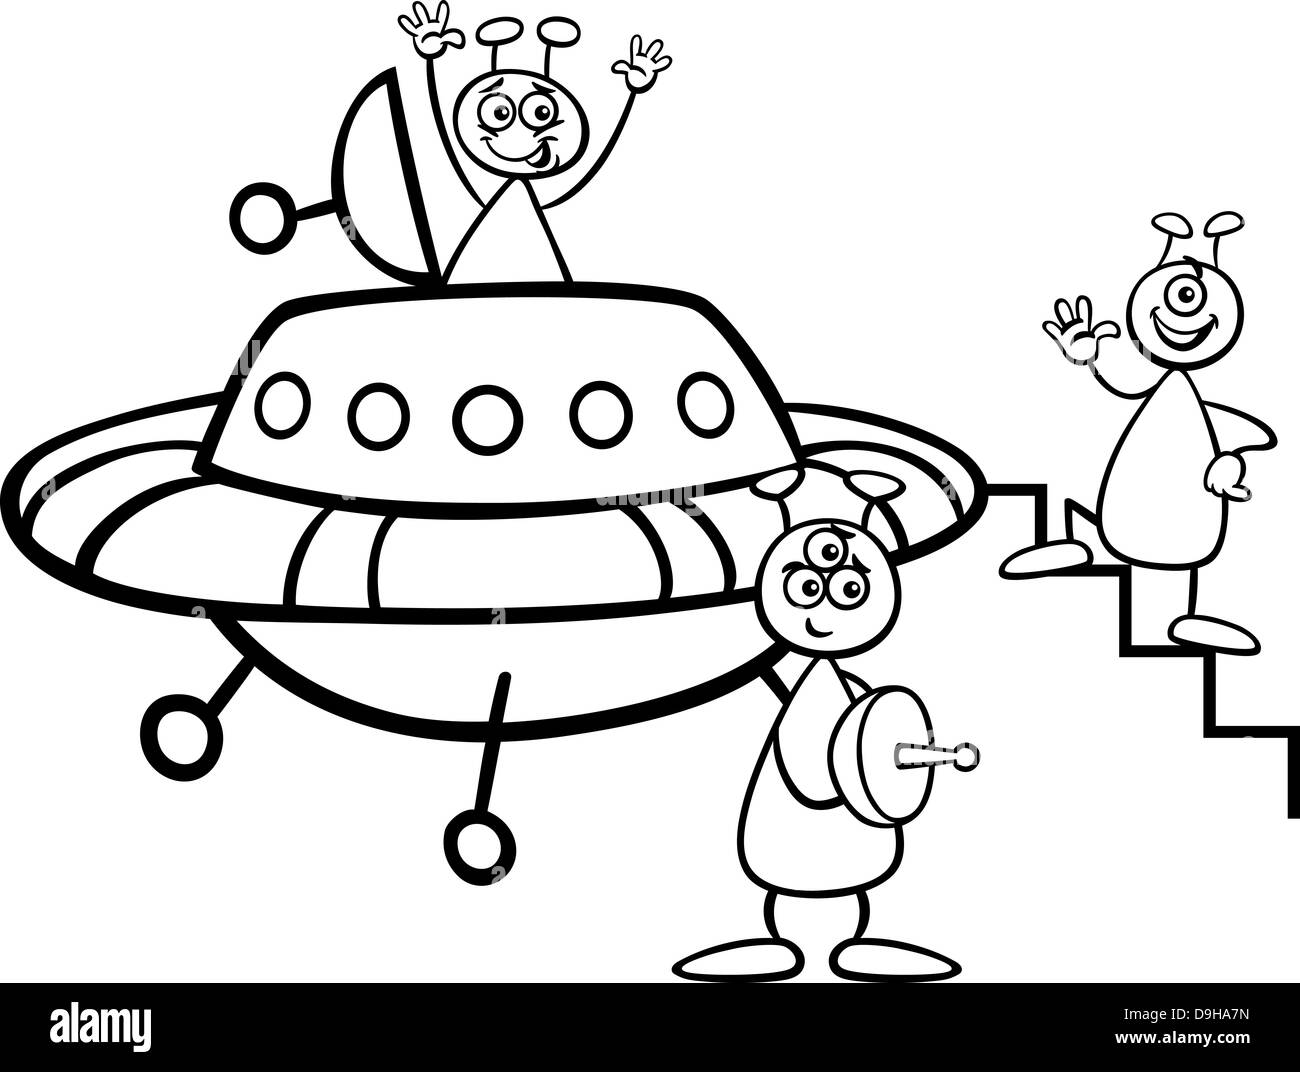 Schwarz / Weiß Cartoon Illustration drei lustige Aliens oder Marsmenschen Comic-Figuren mit Ufo oder Raumschiff für Malbuch Stockfoto